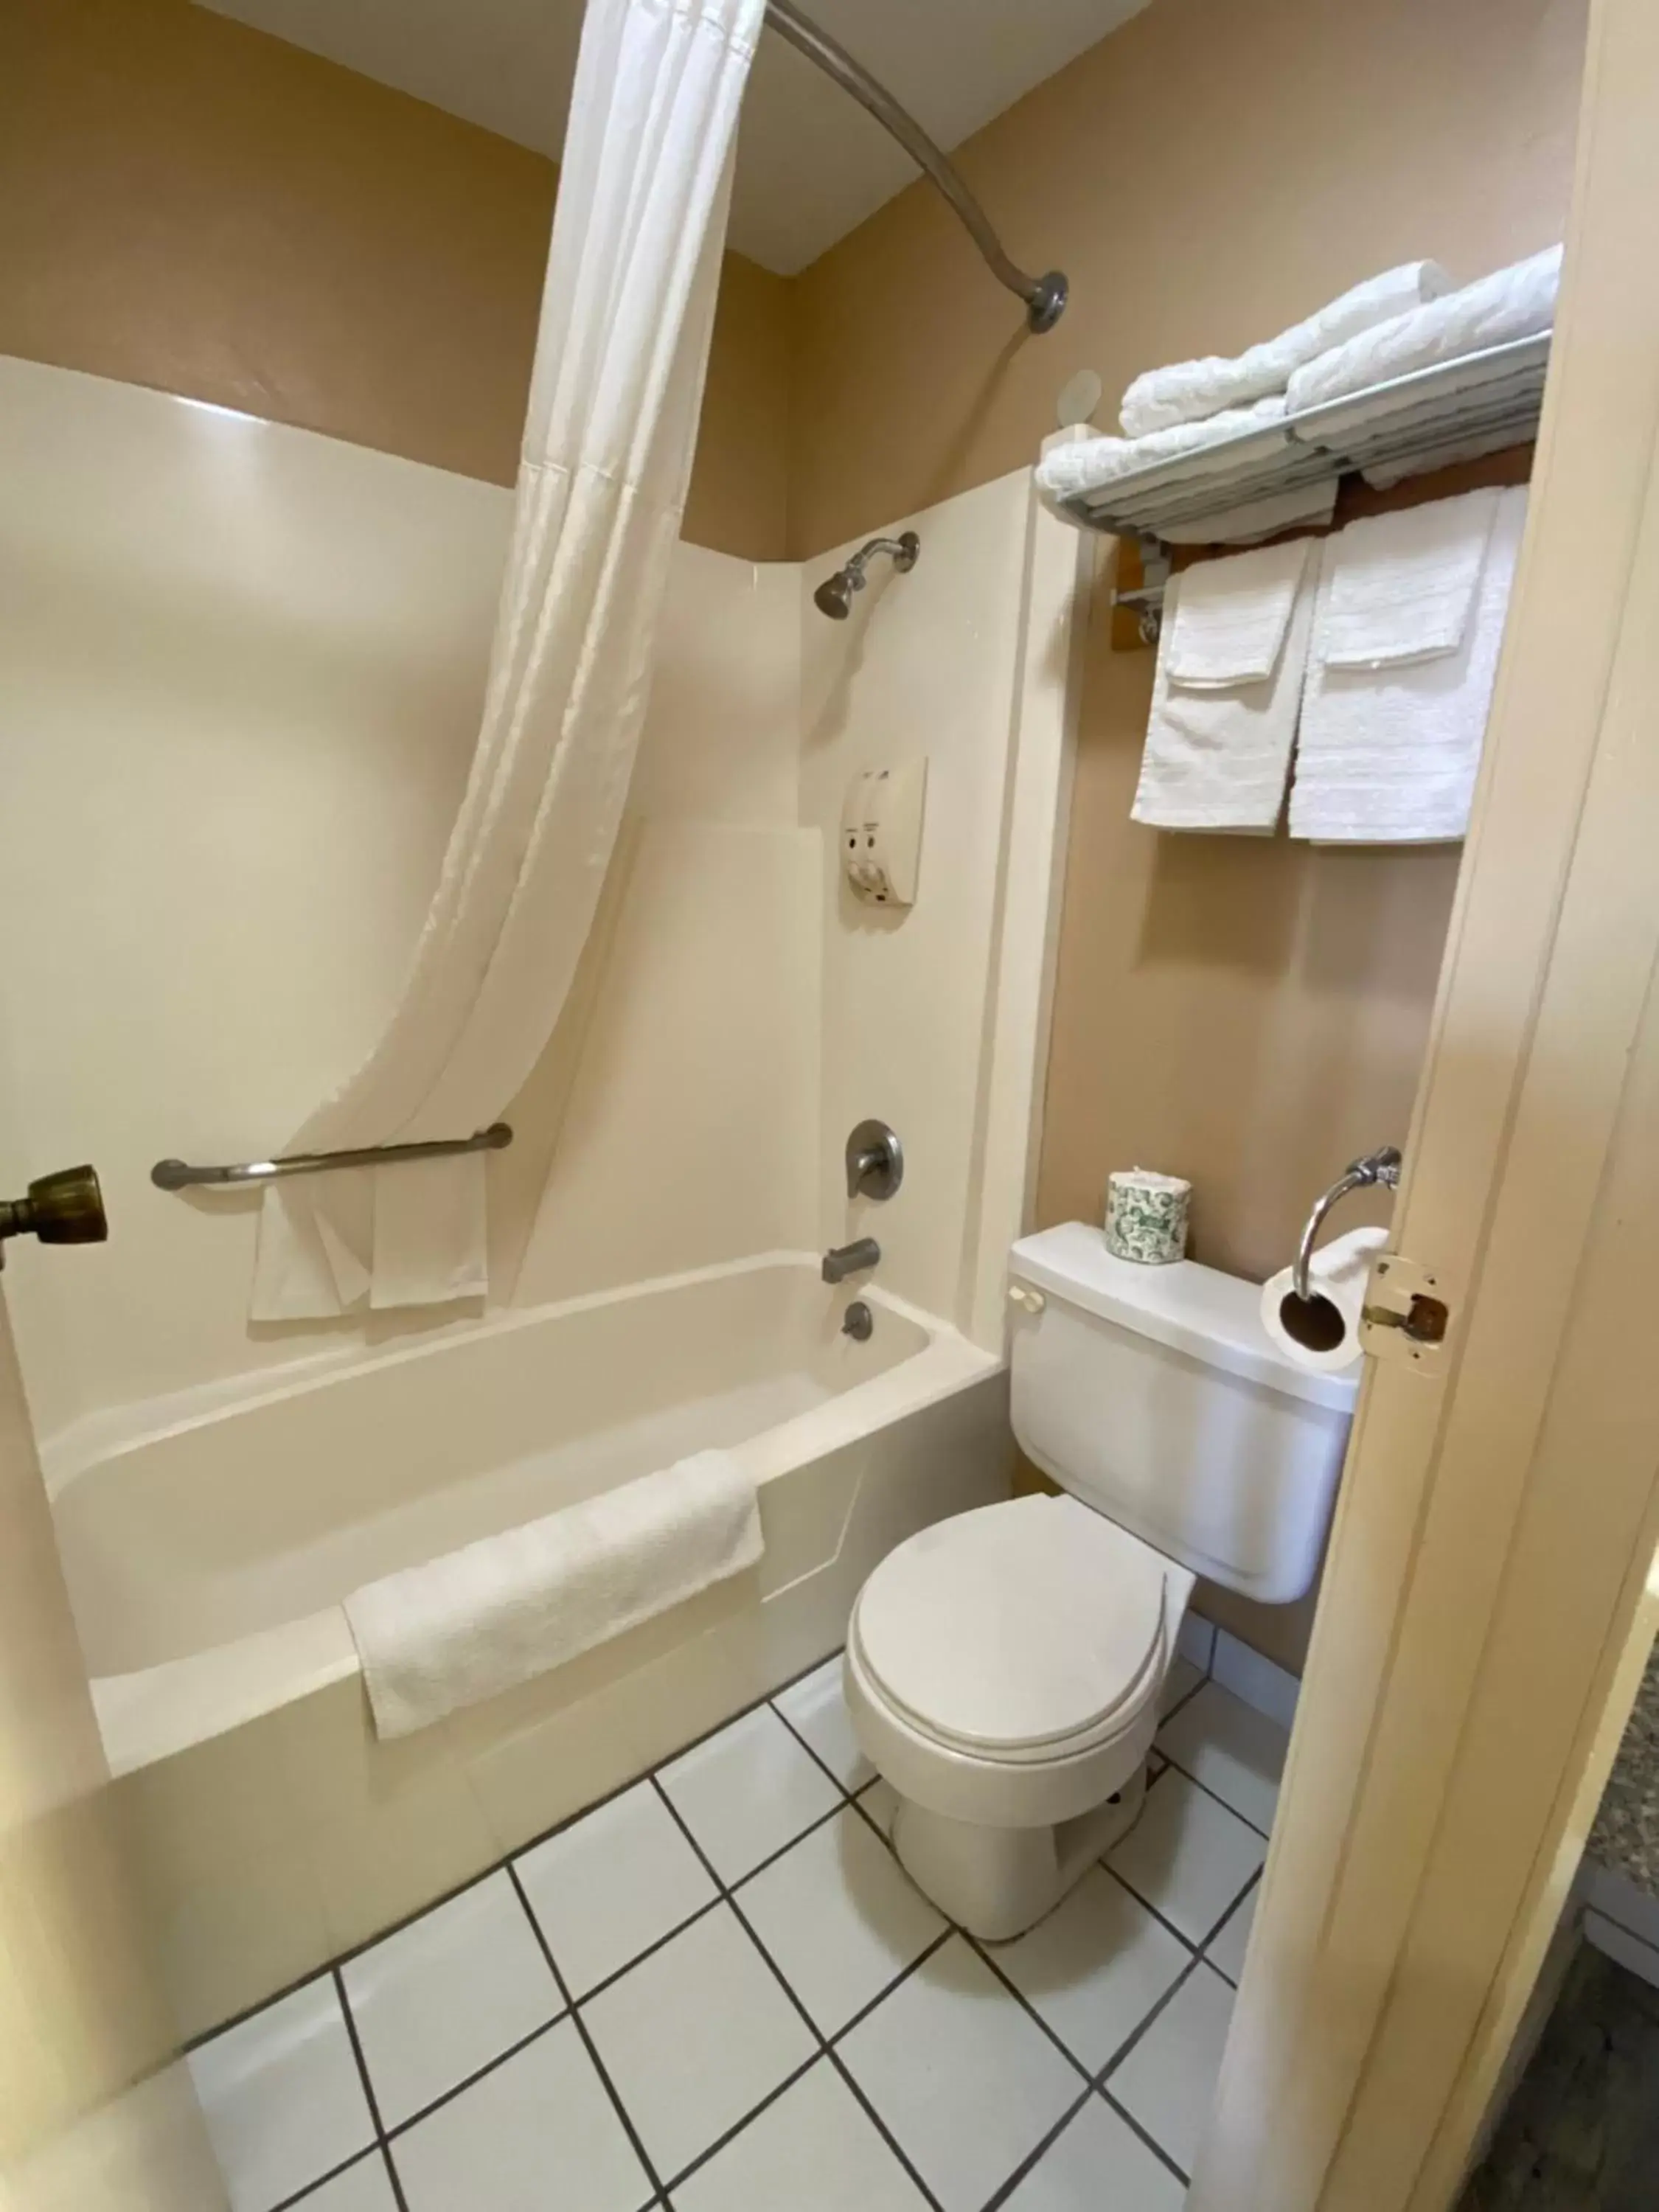 Bathroom in Americas Best Value Inn - Legend's Inn